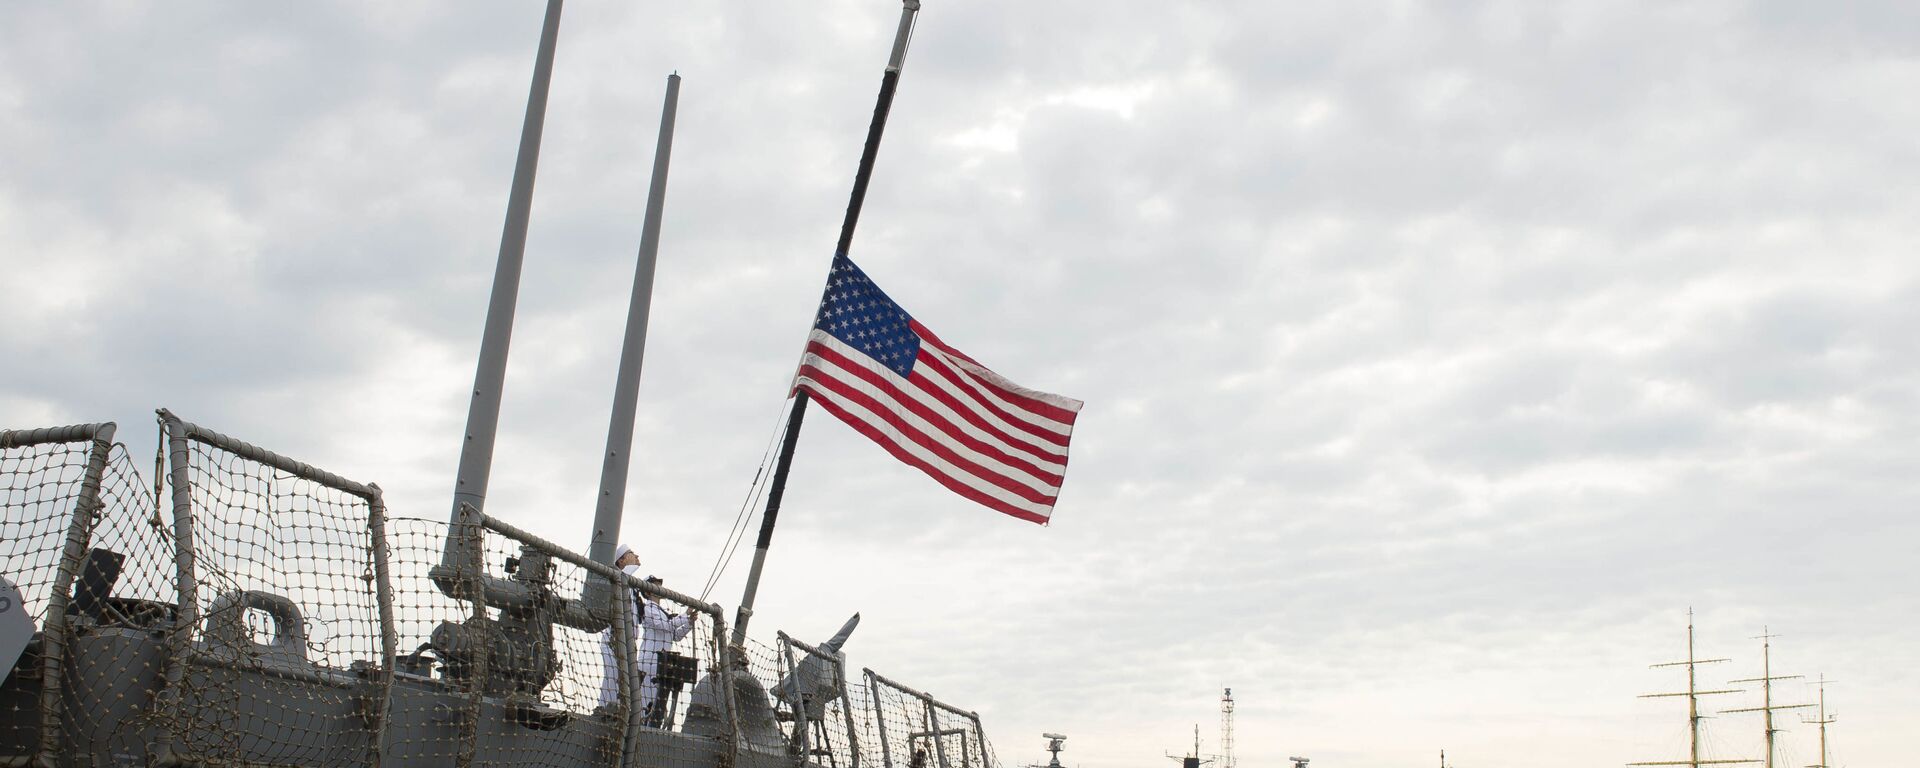 Моряки поднимают флаг на эсминце ВМС США Портер - Sputnik Latvija, 1920, 10.04.2021